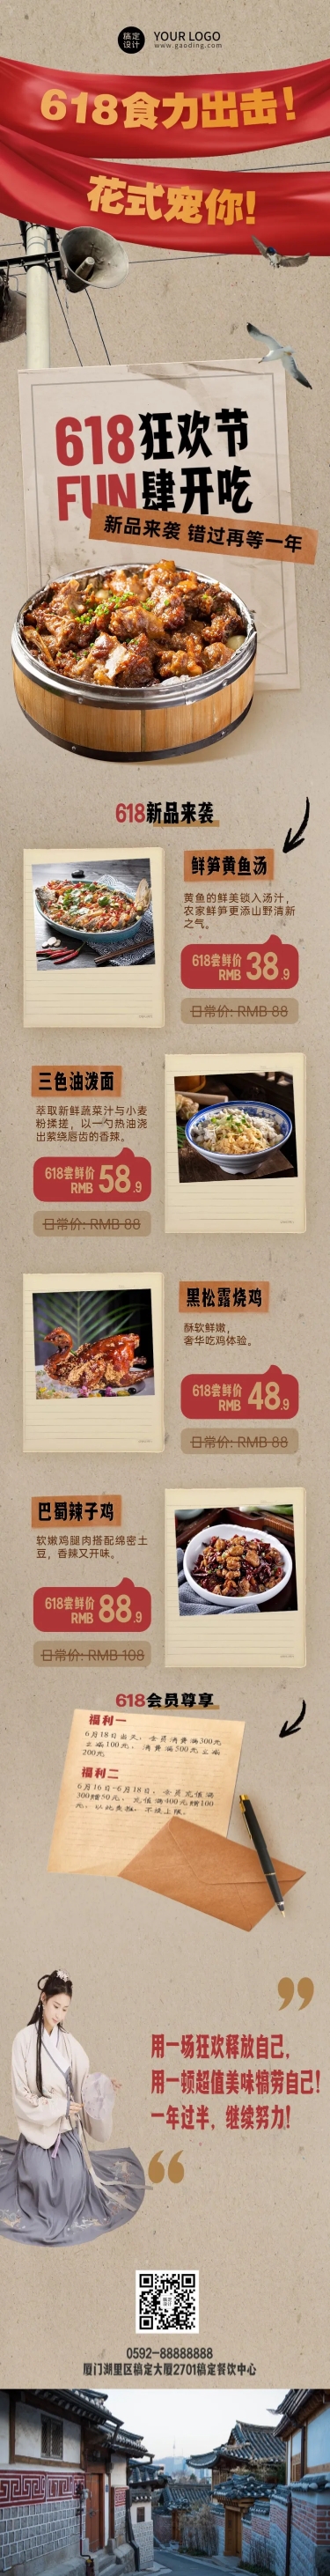 餐饮618中餐正餐店铺产品营销文章长图预览效果